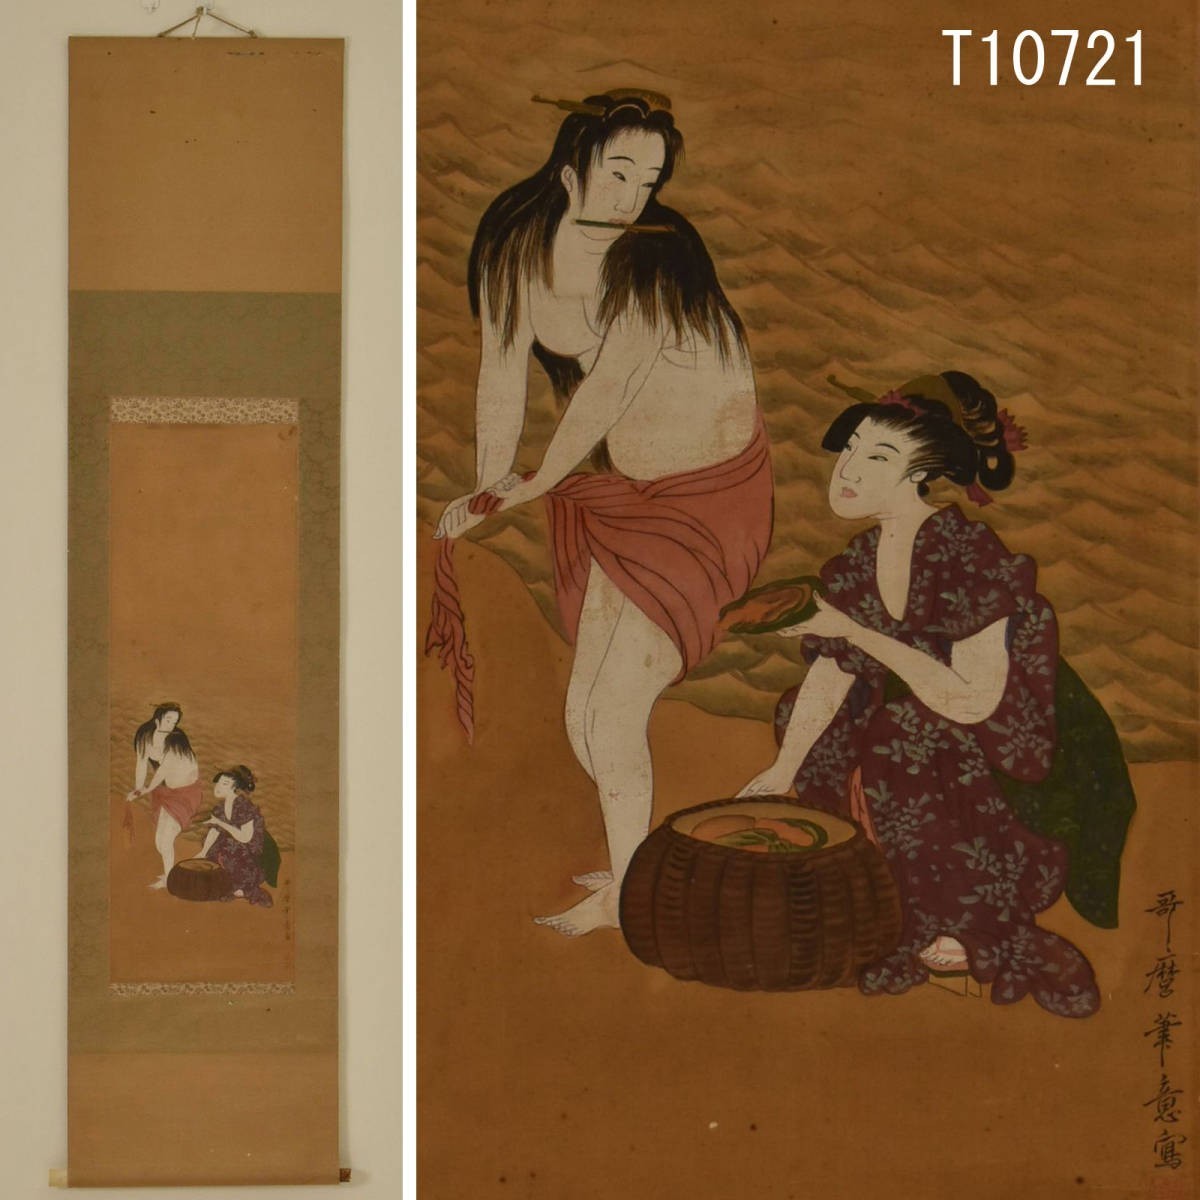 T10721 Utamaro's Handwritten Beauty Painting Hanging Scroll: Authentic, Painting, Japanese painting, person, Bodhisattva